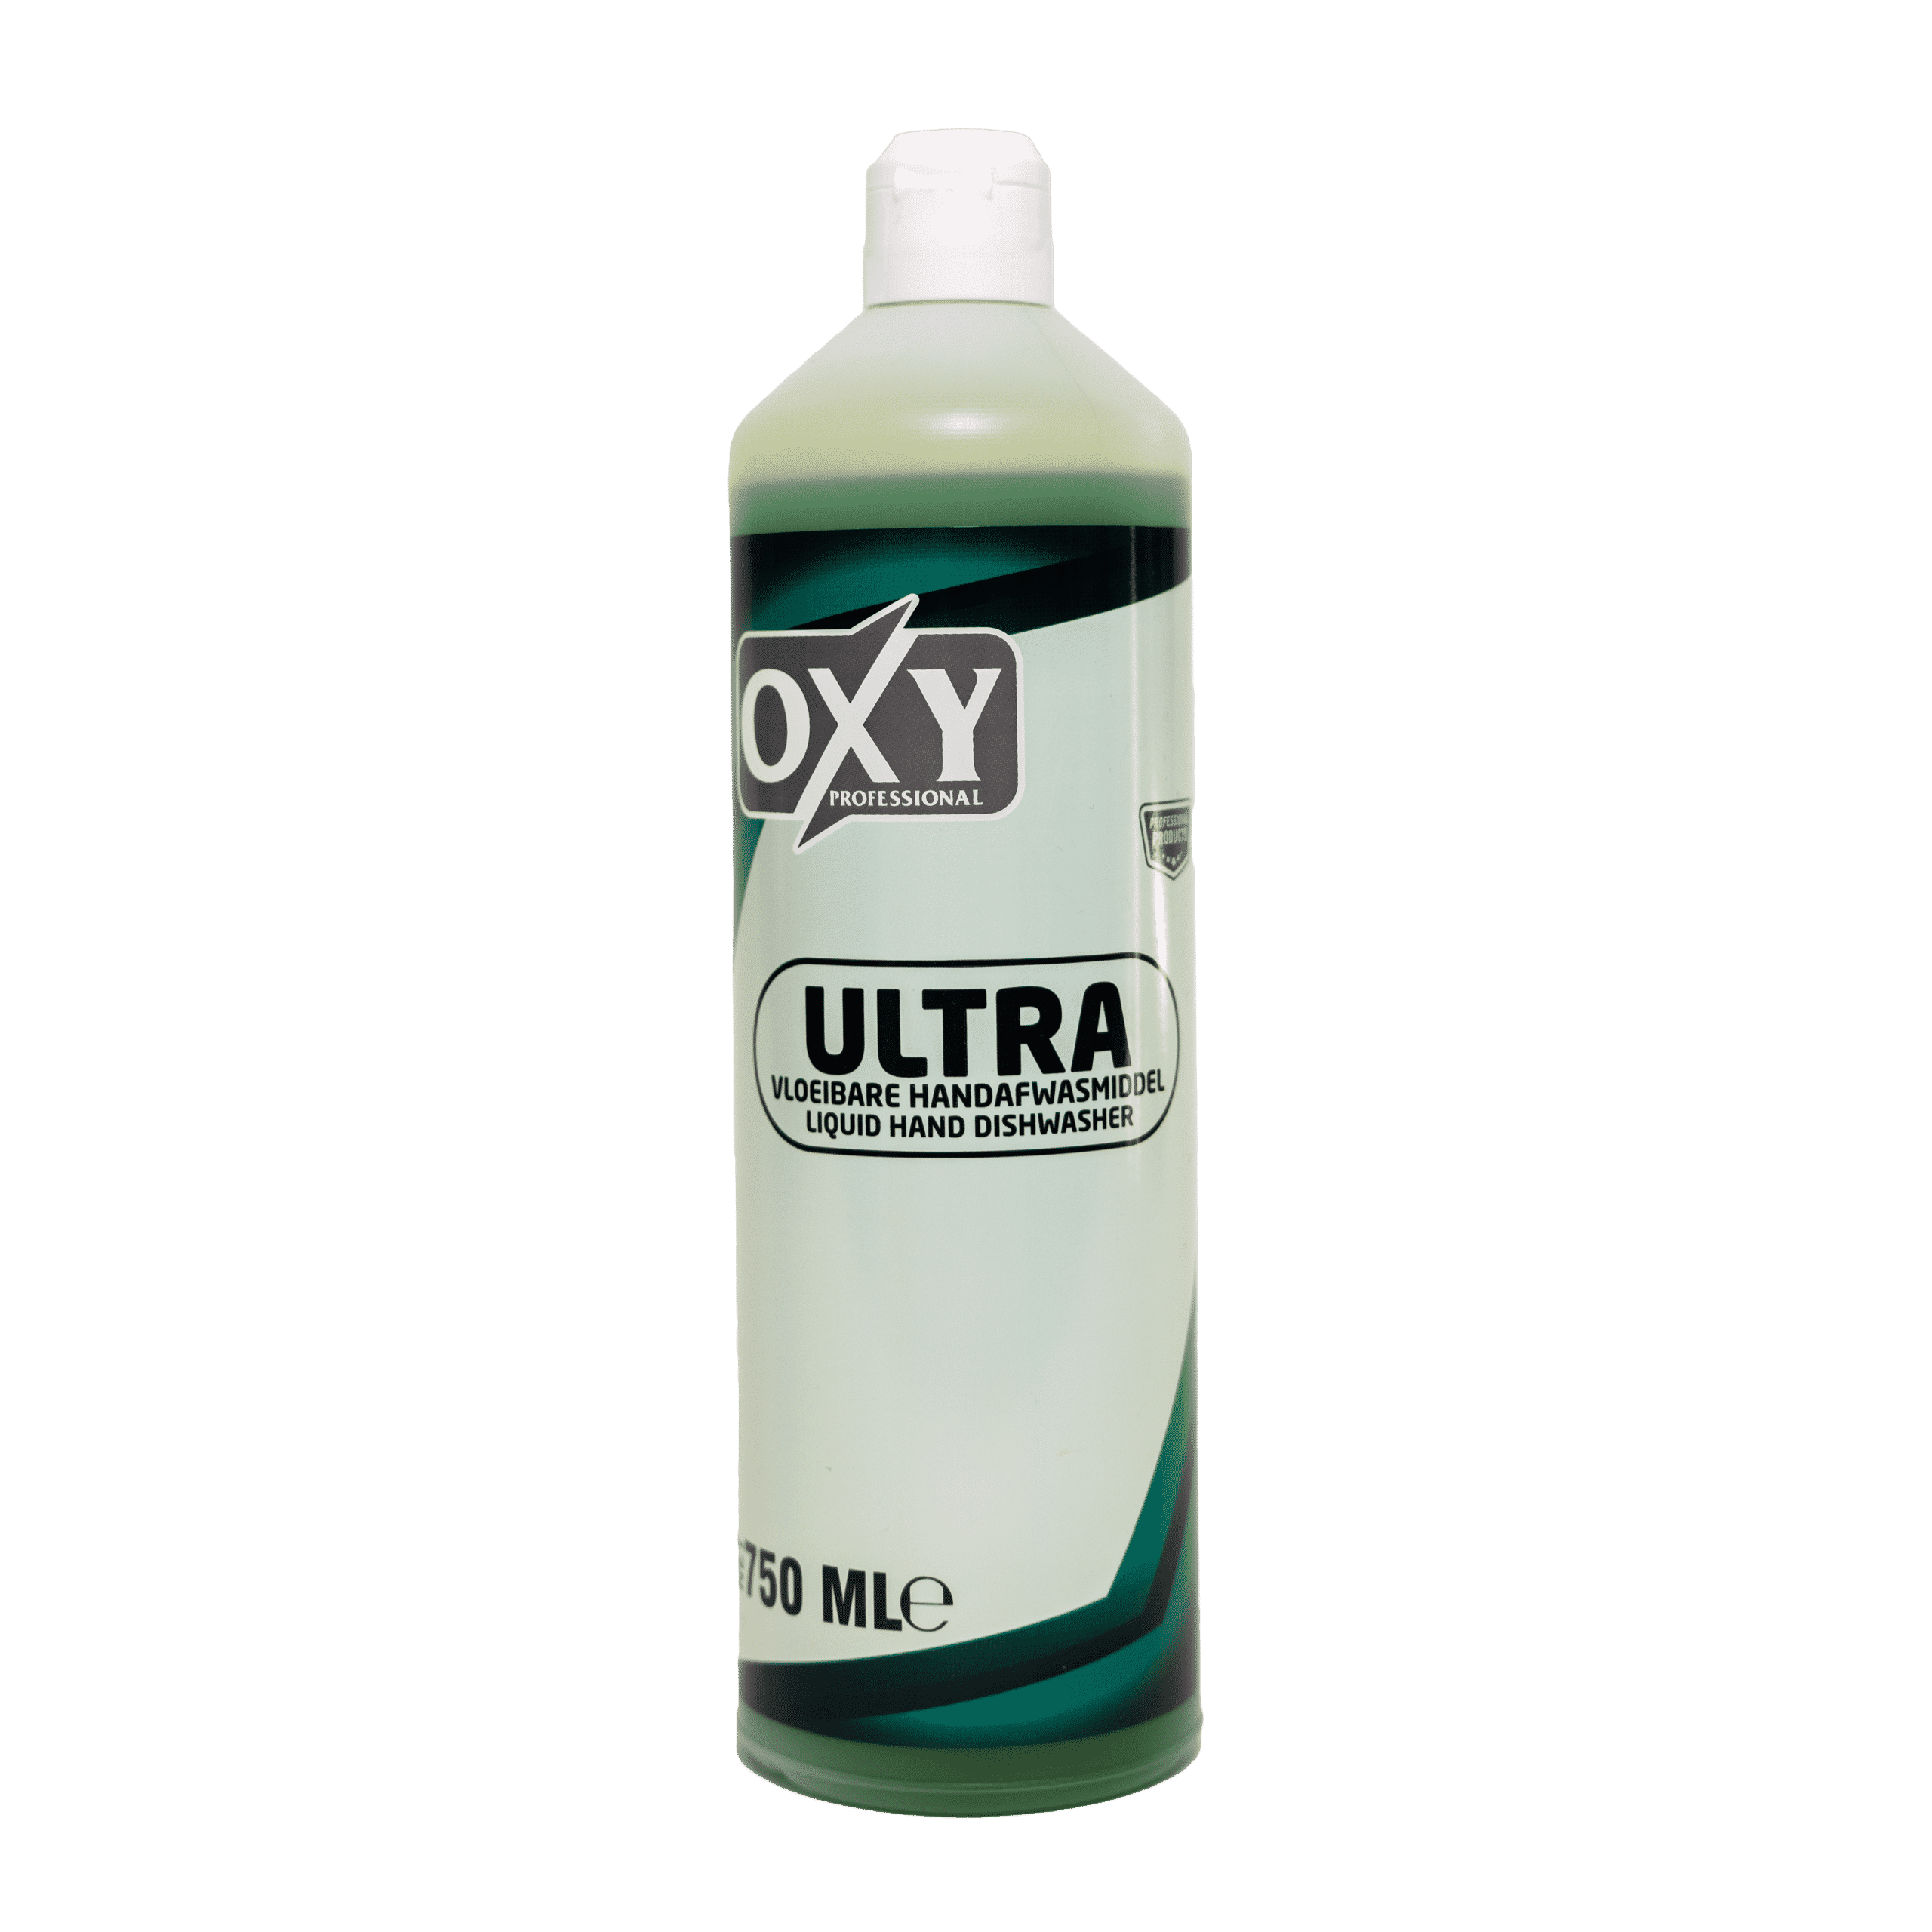 Oxy Professional Ultra